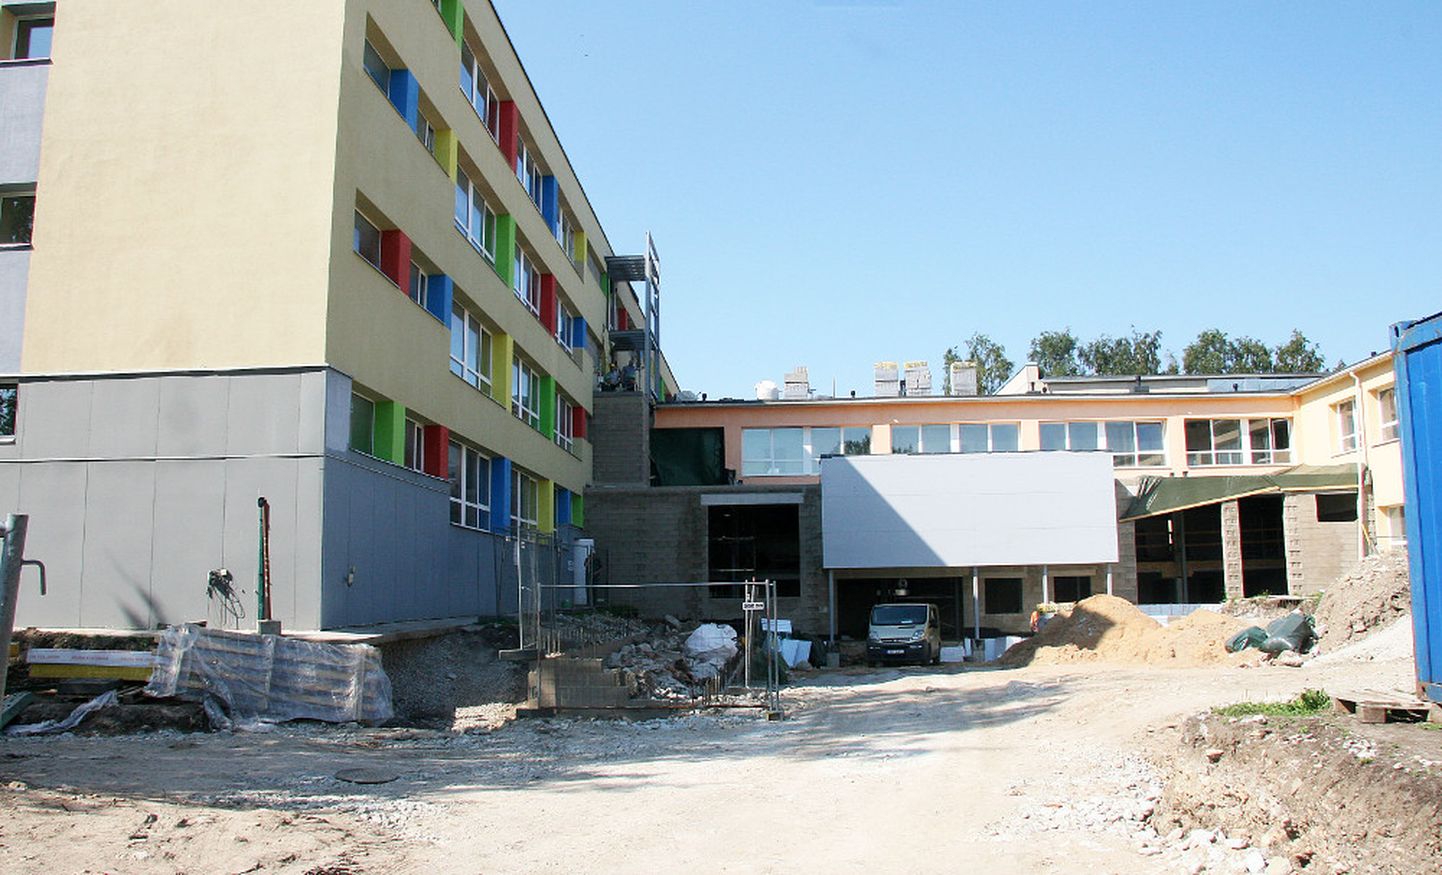 Praegu käivad Jõhvi vene põhikooli ehitustööd. Vähem kui aasta pärast peaks ka eesti põhikool ehitustandriks muutuma.

PEETER LILLEVÄLI